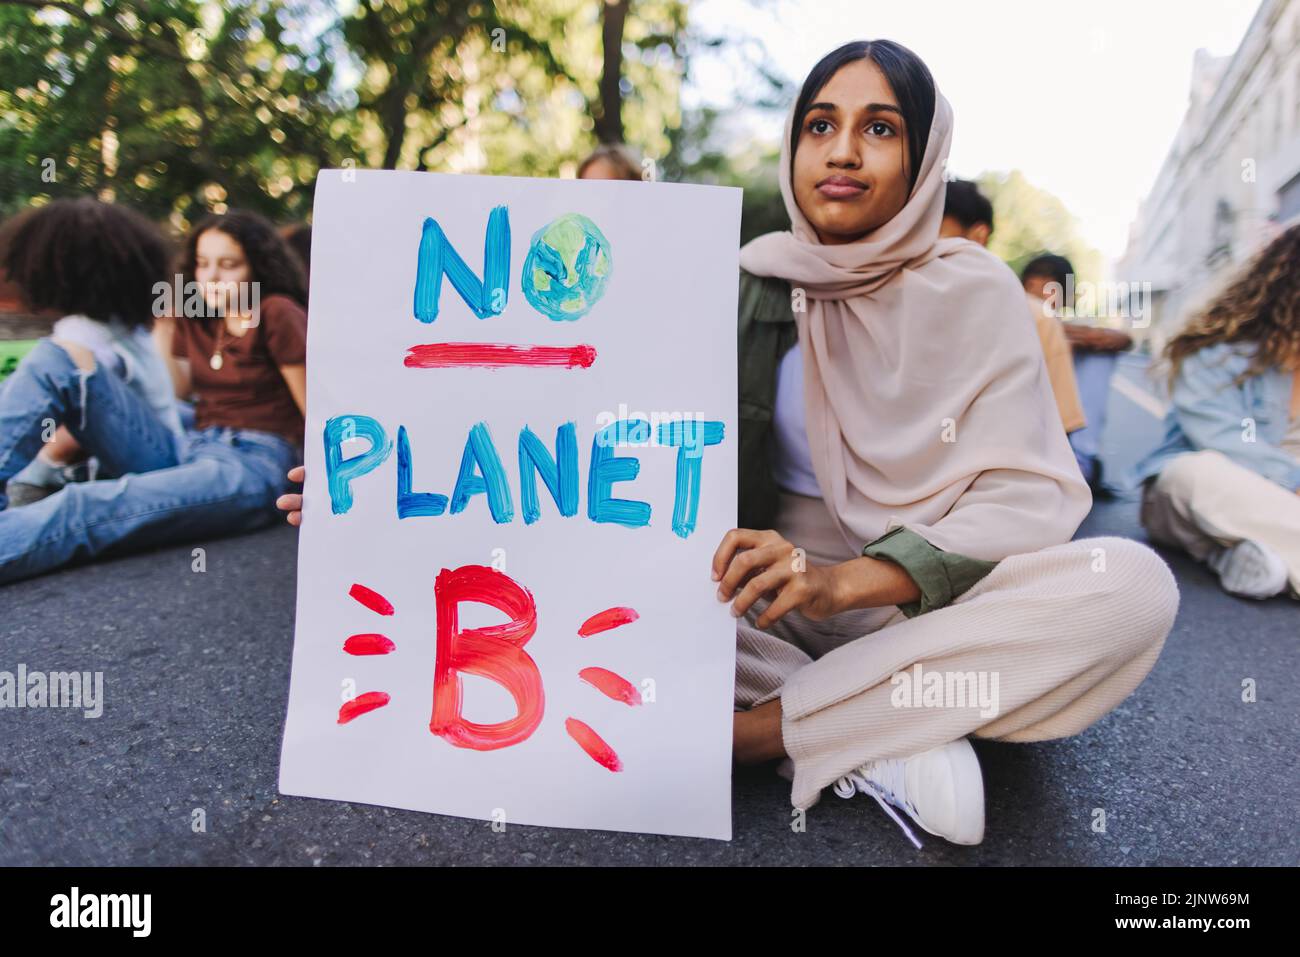 Fille musulmane tenant une affiche « pas de planète B » lors d'une manifestation sur le changement climatique. Groupe de jeunes militants multiculturels protestant contre le réchauffement climatique Banque D'Images